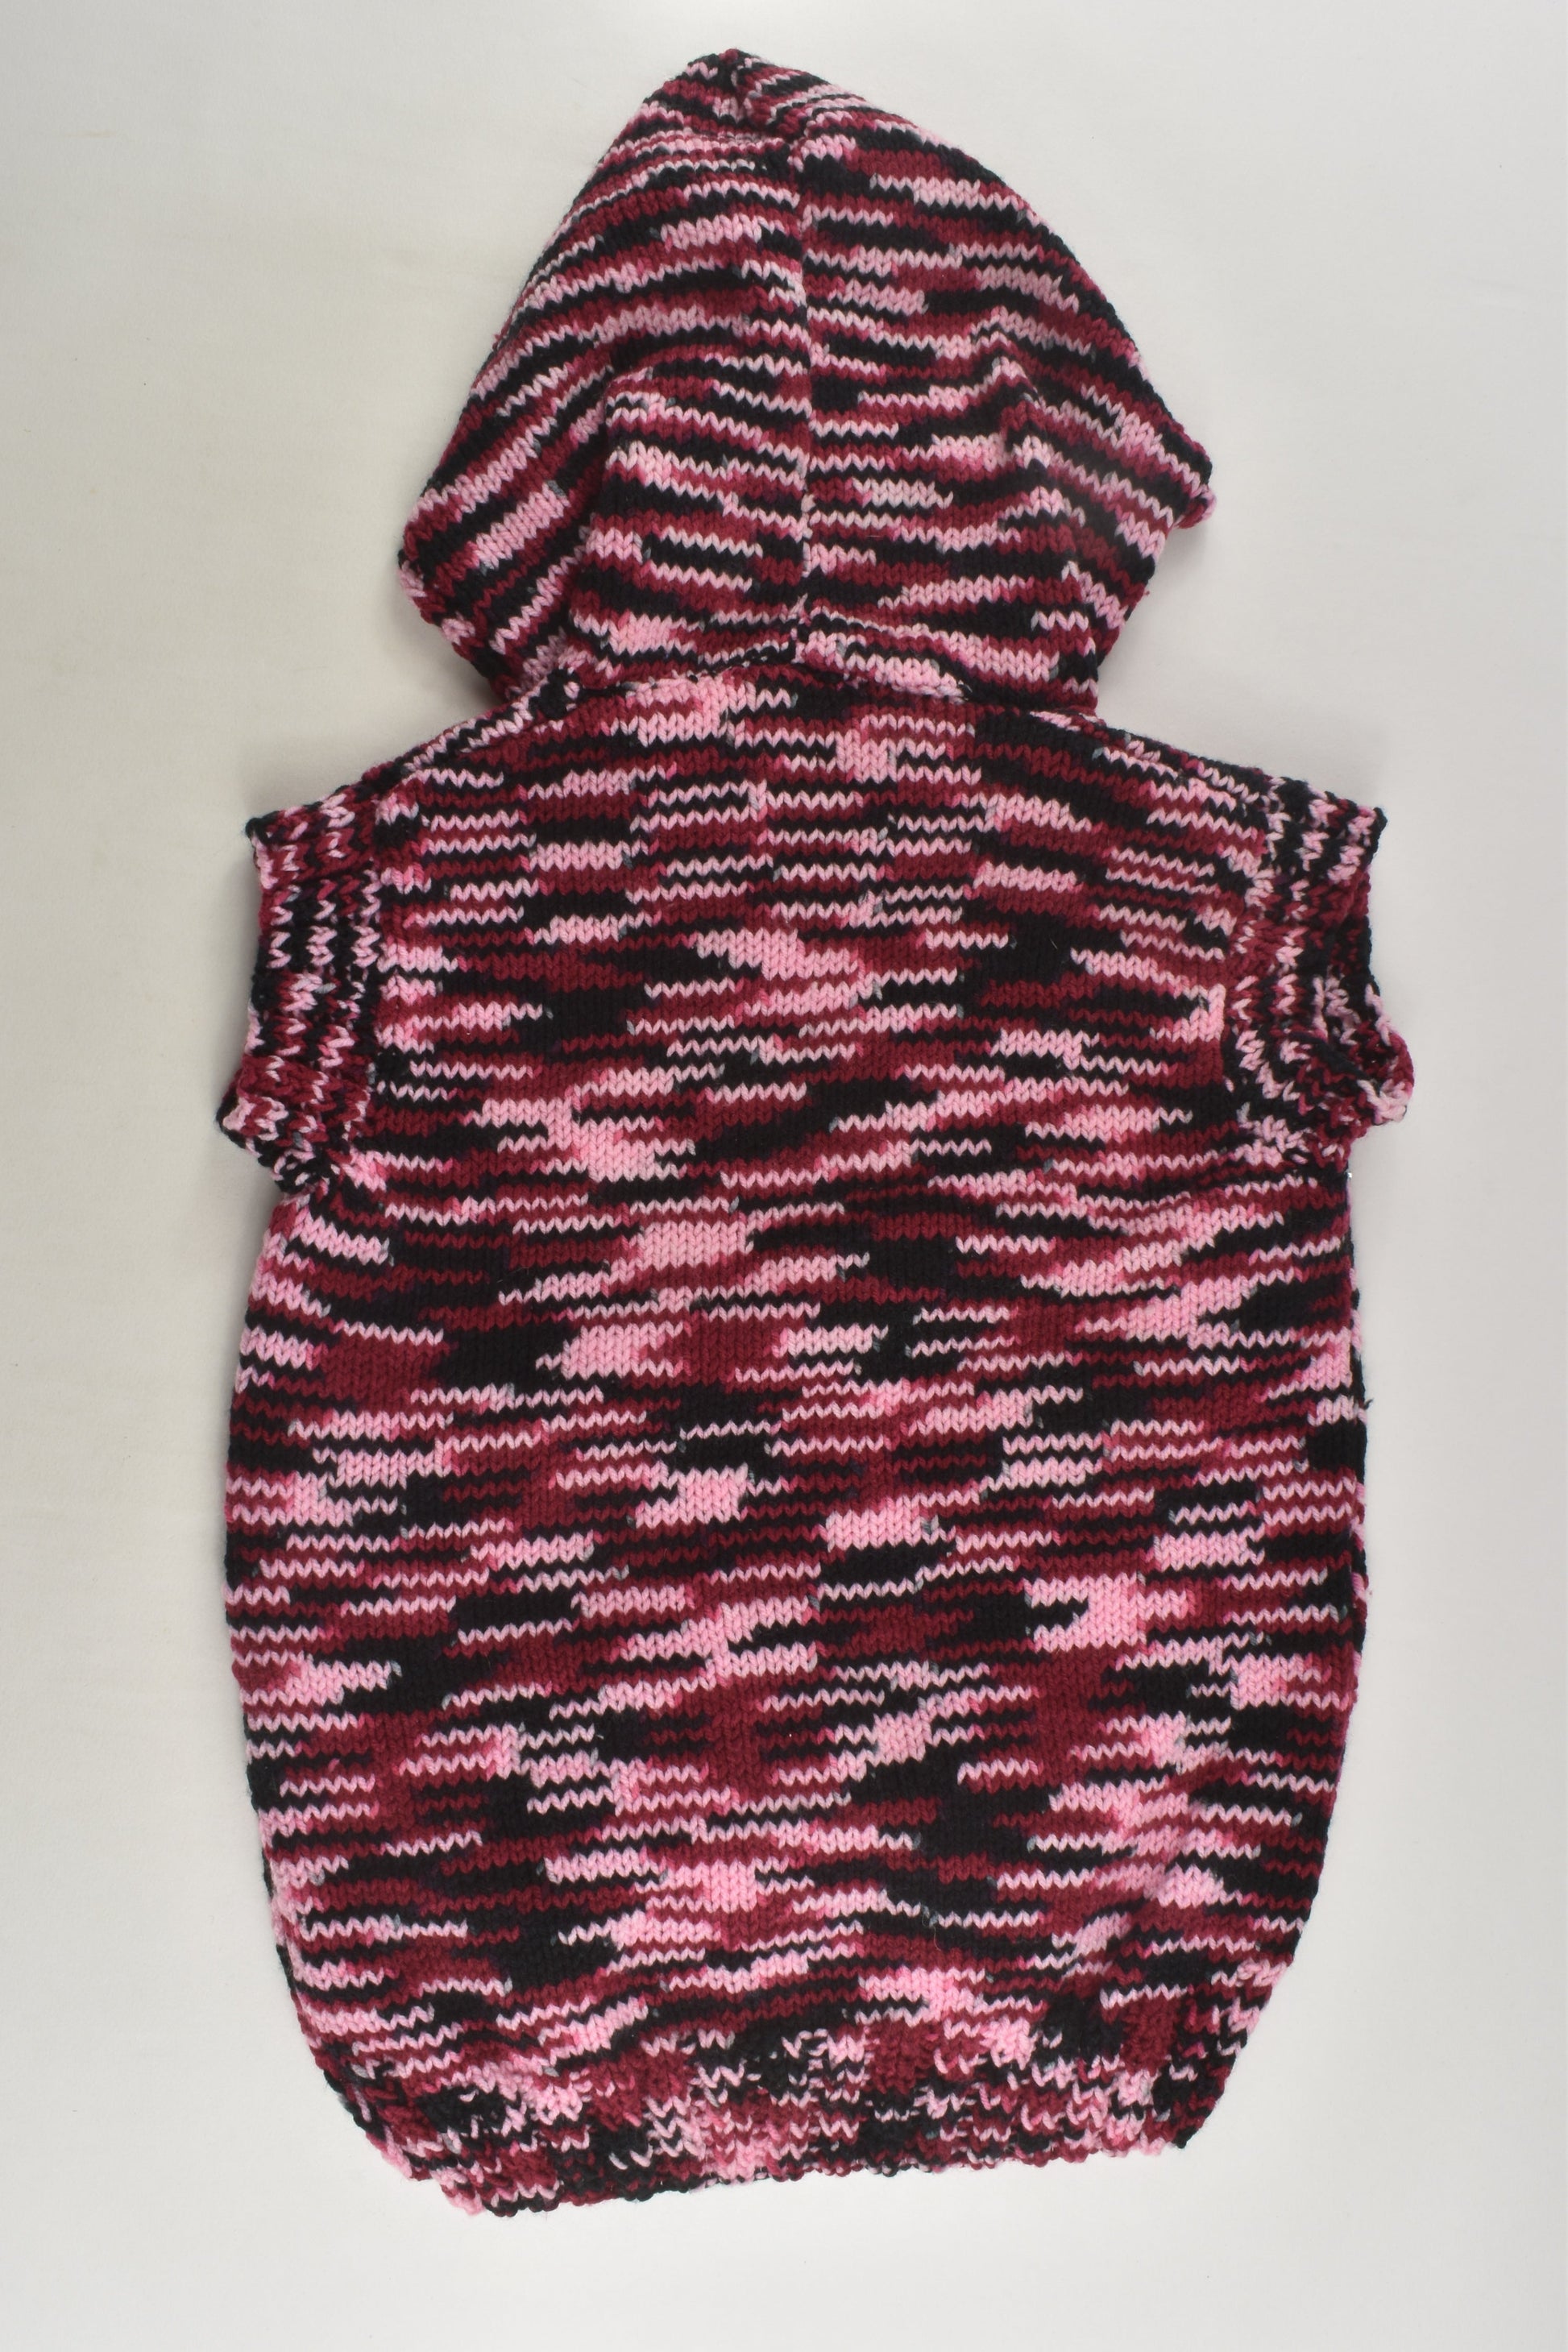 Handmade Size approx 4 Knit Sleeveless Jumper